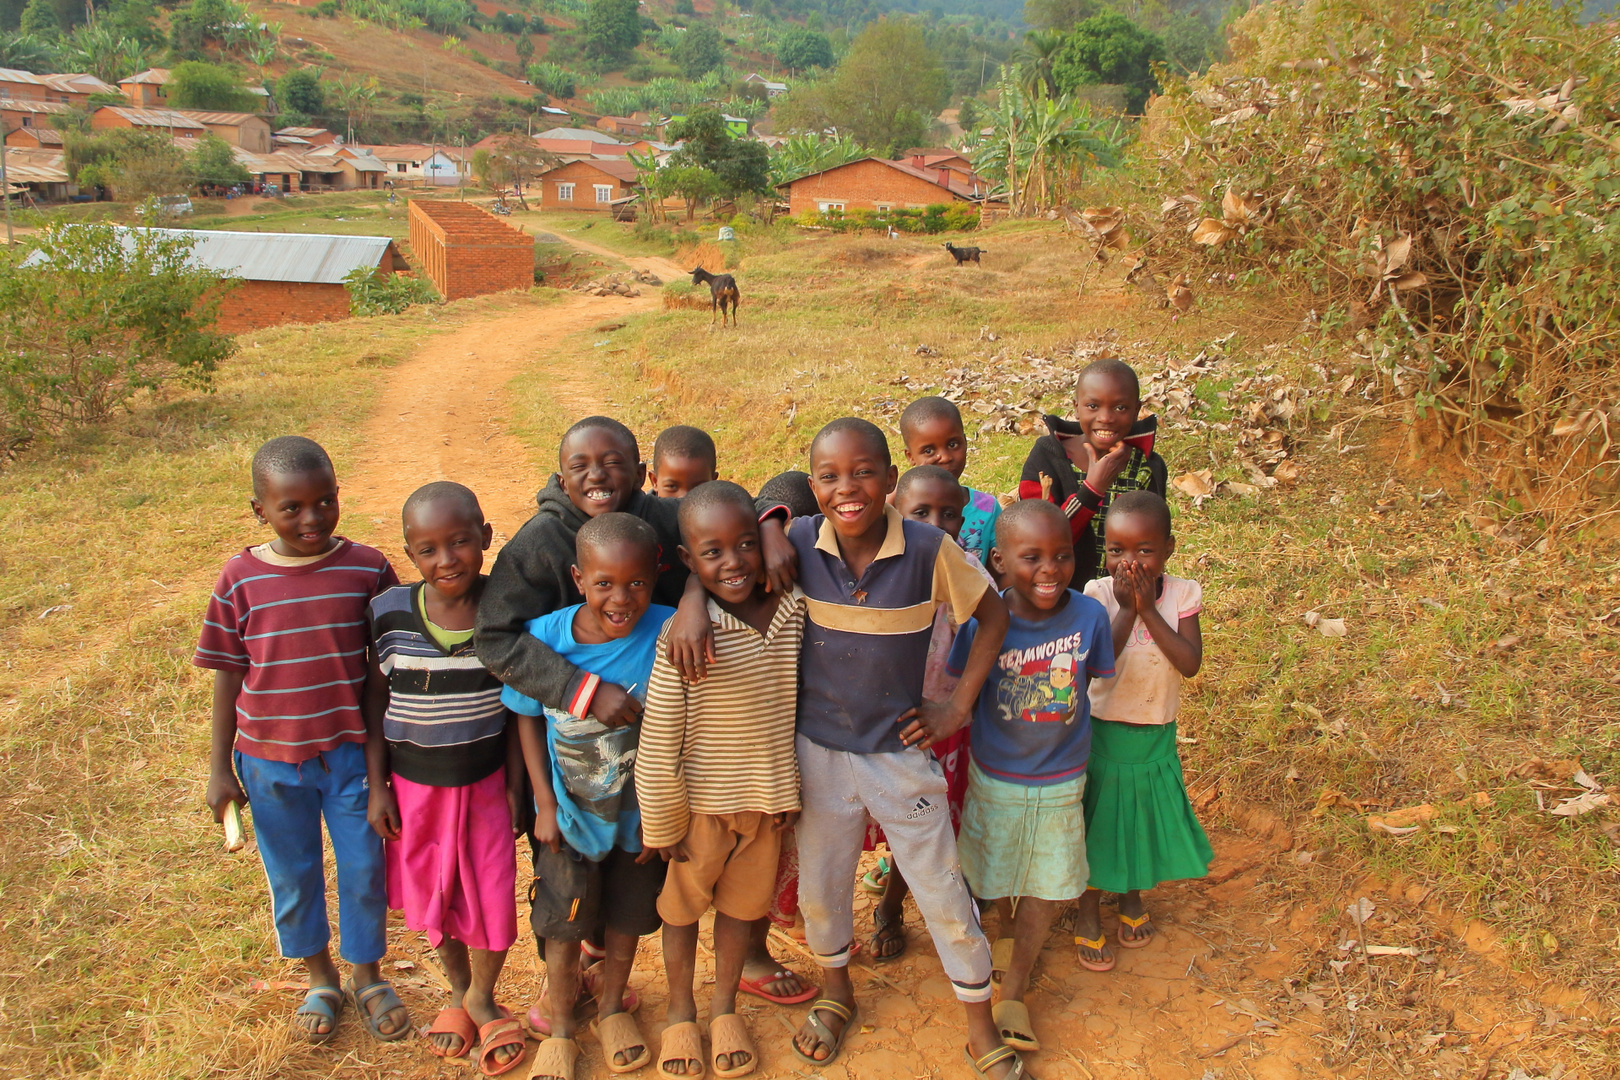 Kinder in Tansania